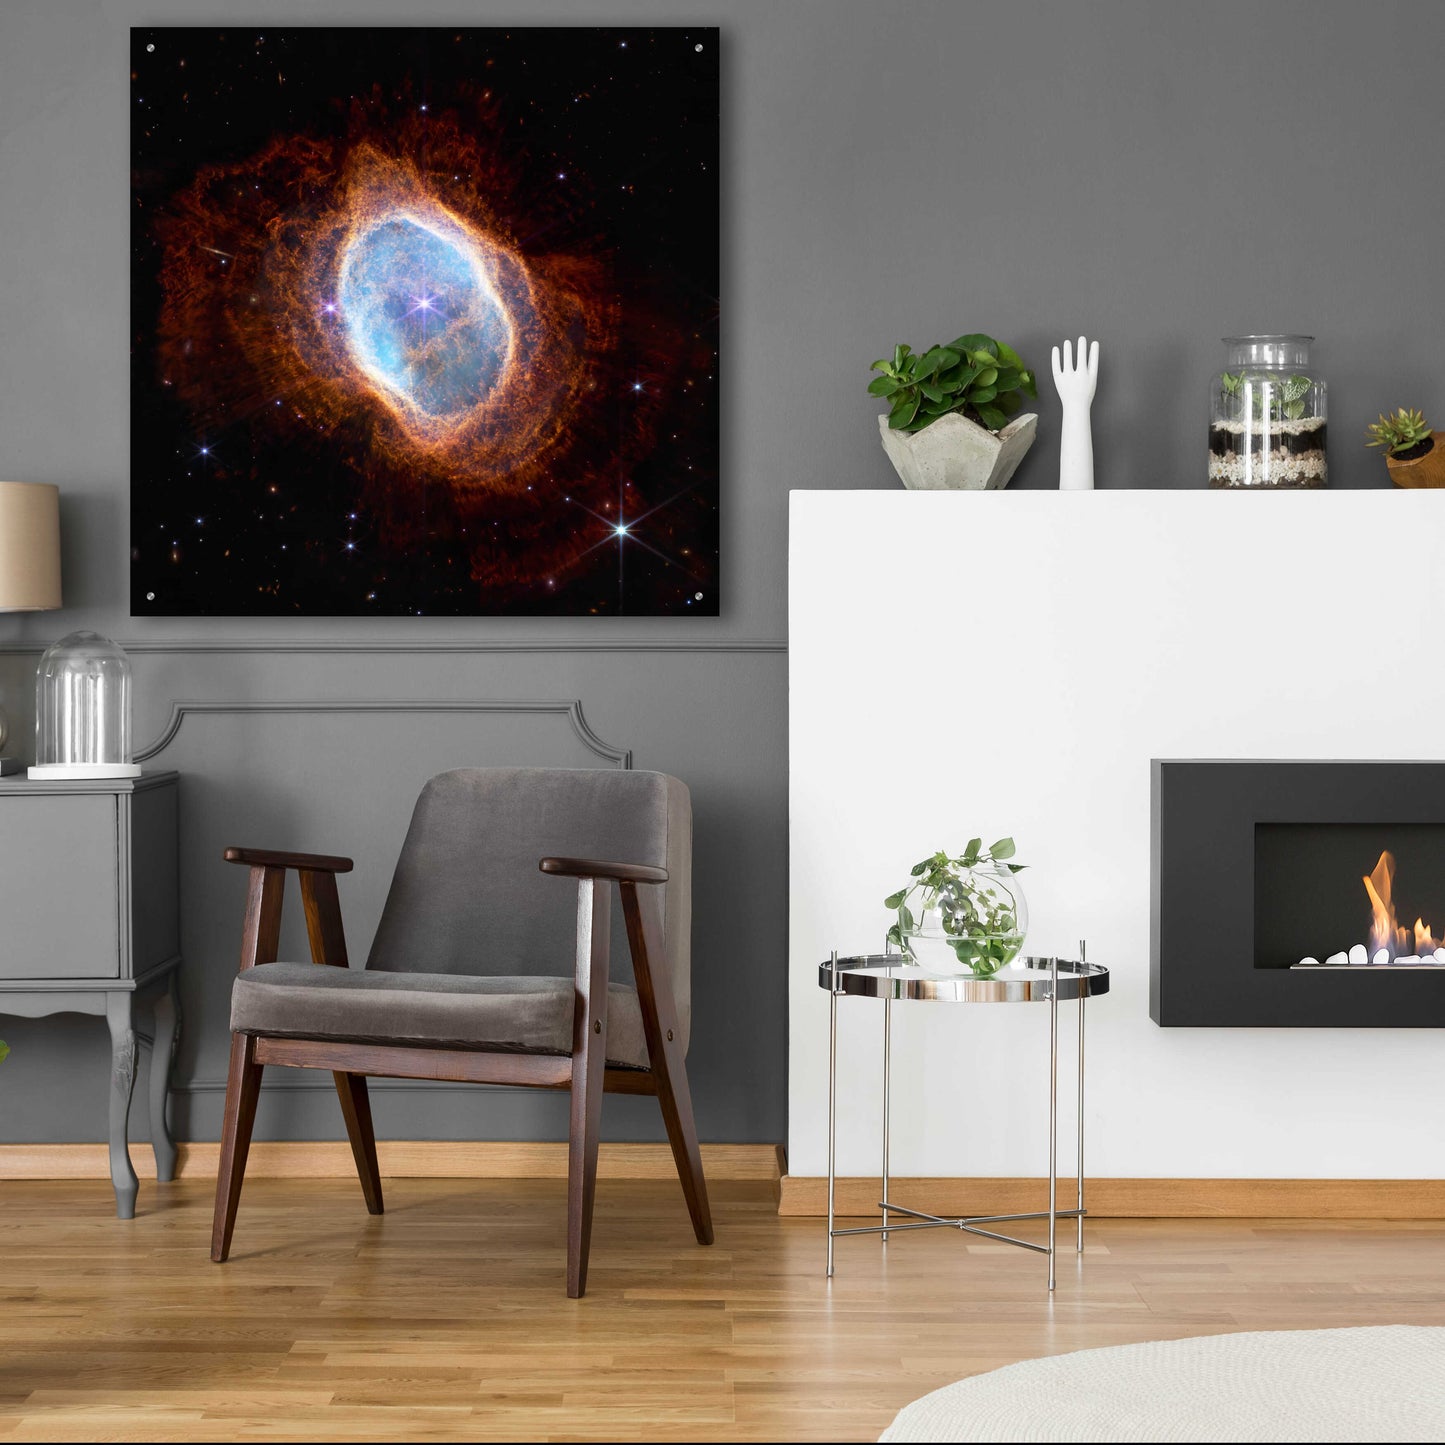 Epic Art 'Southern Ring Nebula' by NASA, Acrylic Glass Wall Art,36x36